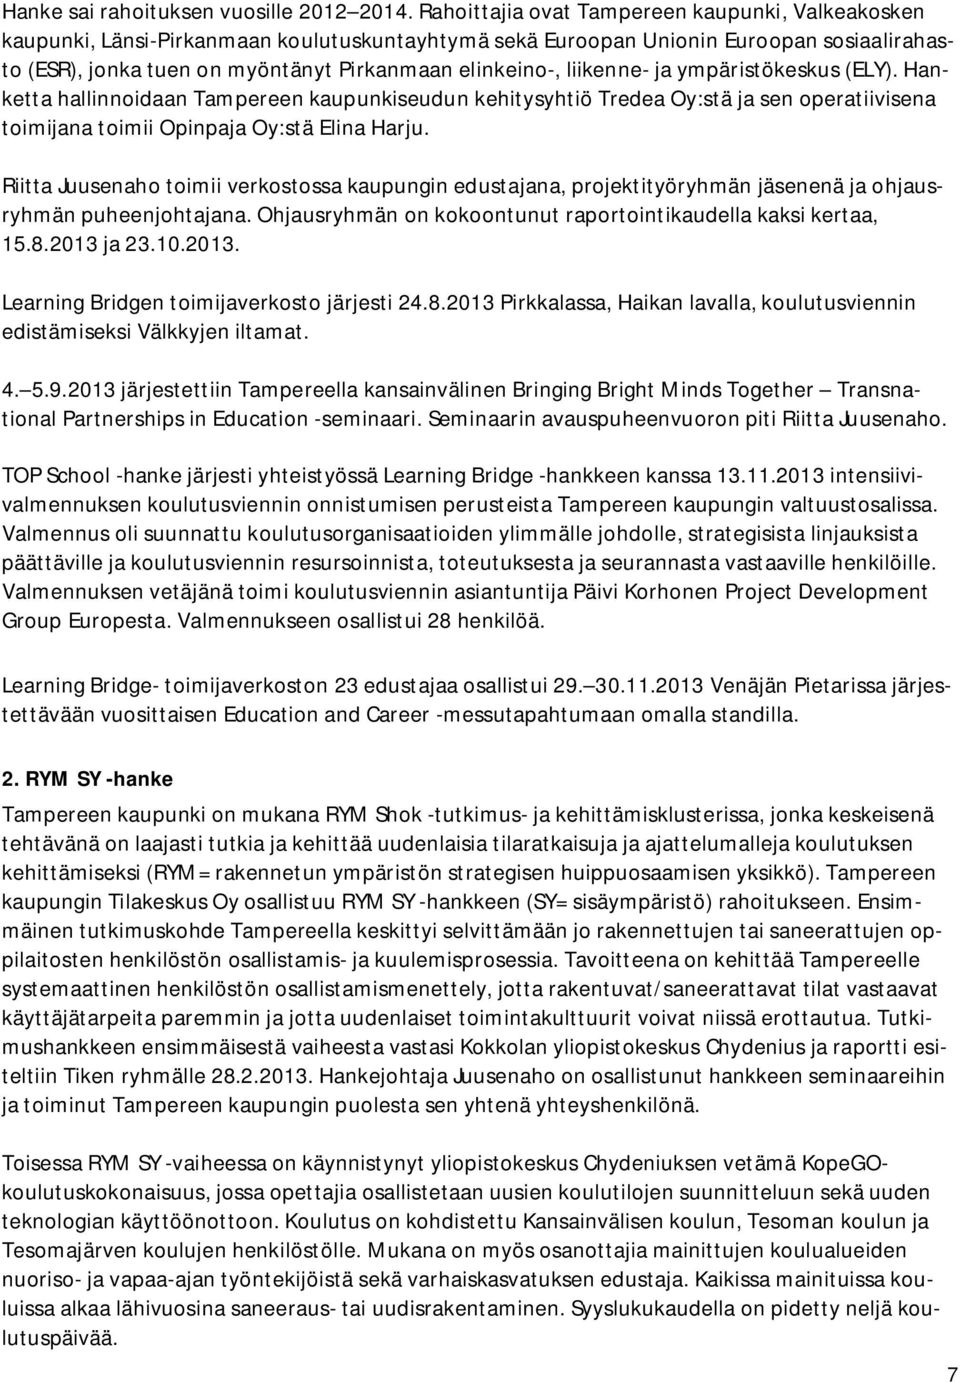 liikenne- ja ympäristökeskus (ELY). Hanketta hallinnoidaan Tampereen kaupunkiseudun kehitysyhtiö Tredea Oy:stä ja sen operatiivisena toimijana toimii Opinpaja Oy:stä Elina Harju.